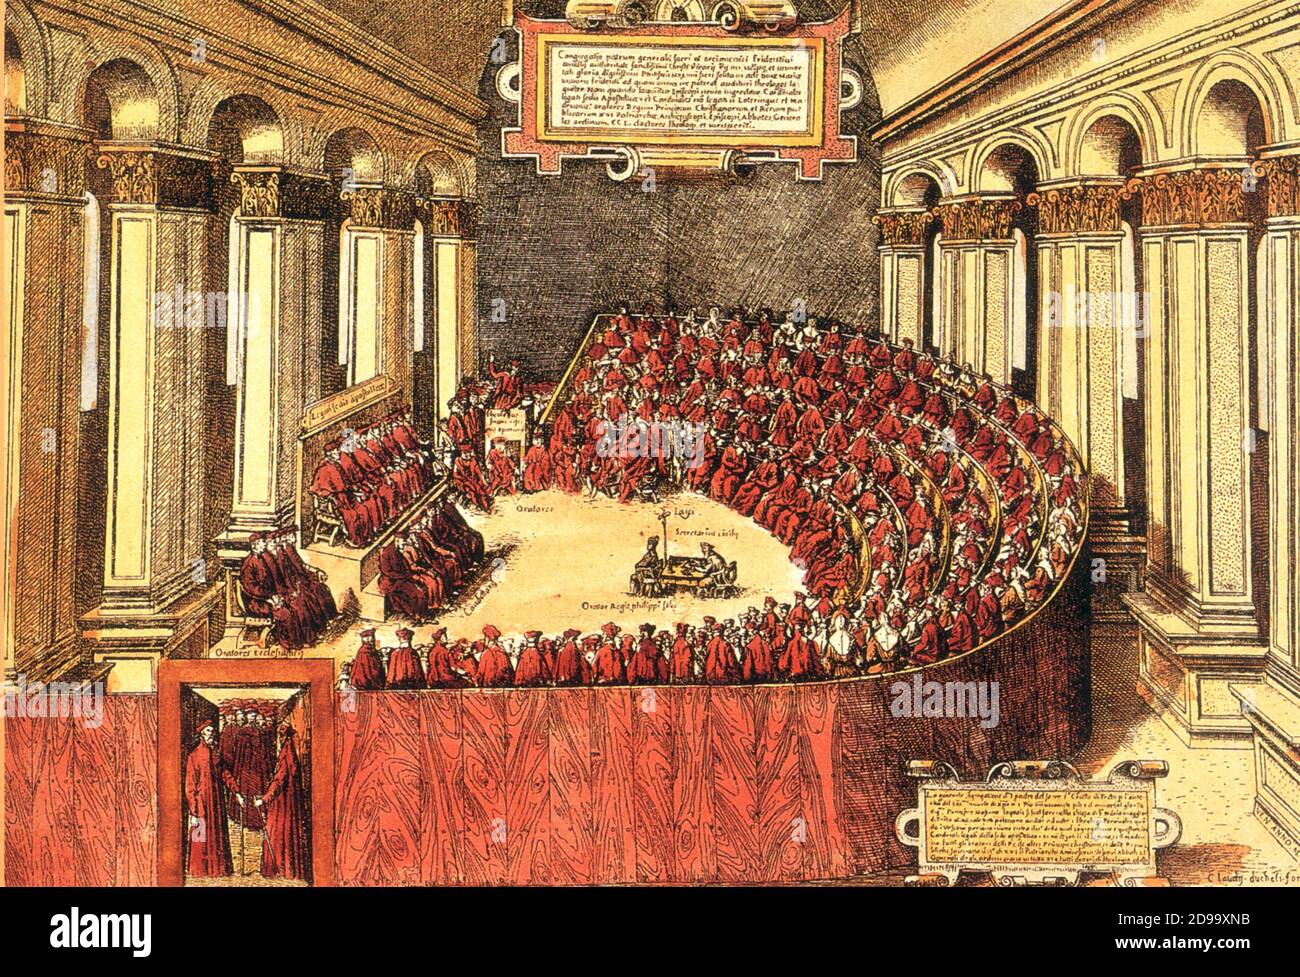 ' CONCILIO DI TRENTO ' ( 1565 , par Claudy , gravure ) ecclesia ' - CONCILIO DI TRENTO - Cardinale - cardinali - alti prelati - alto prelato - VATICANO - VATICAN - RELIGIONE - RELIGION - CONSEIL TRENT - CONTRORIFORMA - CONTRE-RÉFORME - contre-réforme - riunione - réunion - assemblea --- Archivio GBB Banque D'Images